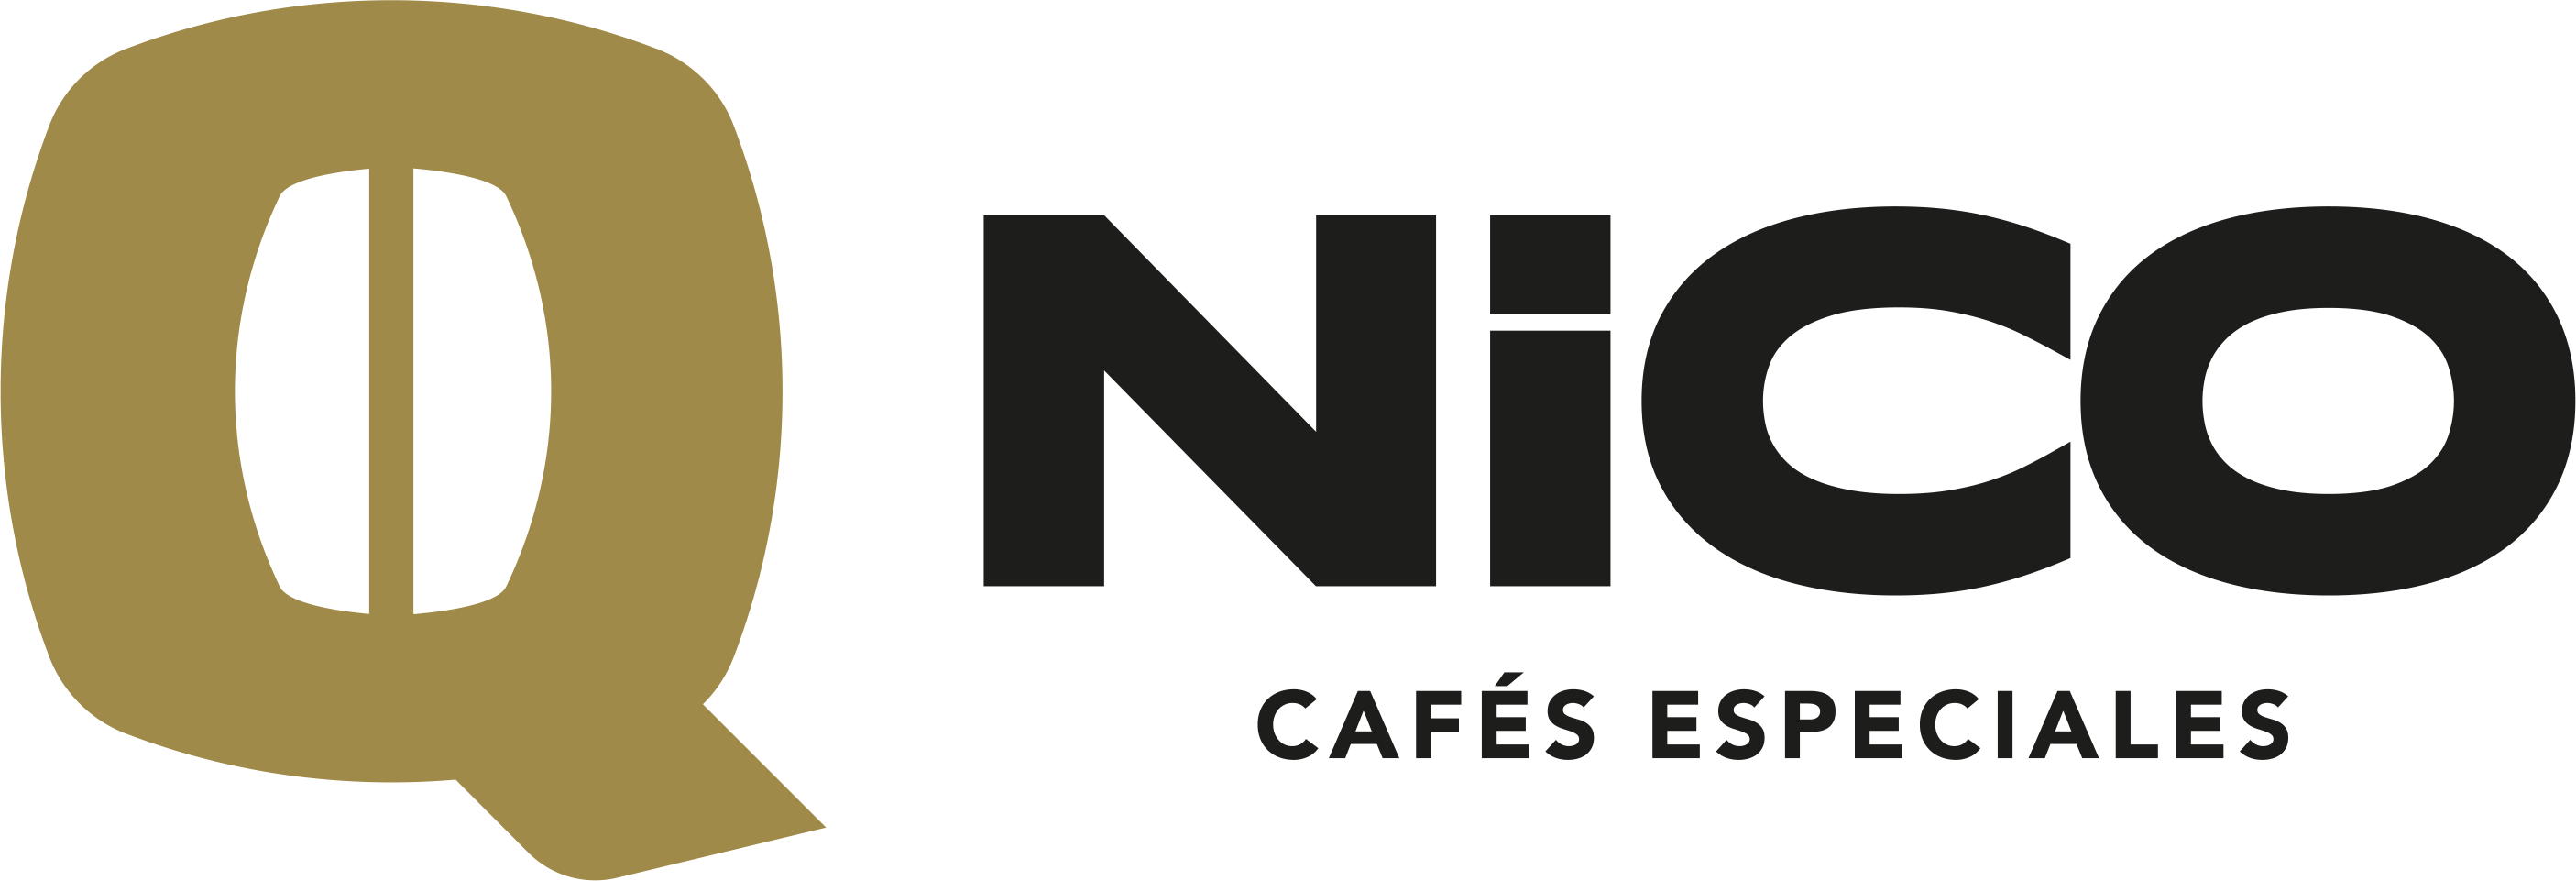 QNICO Café